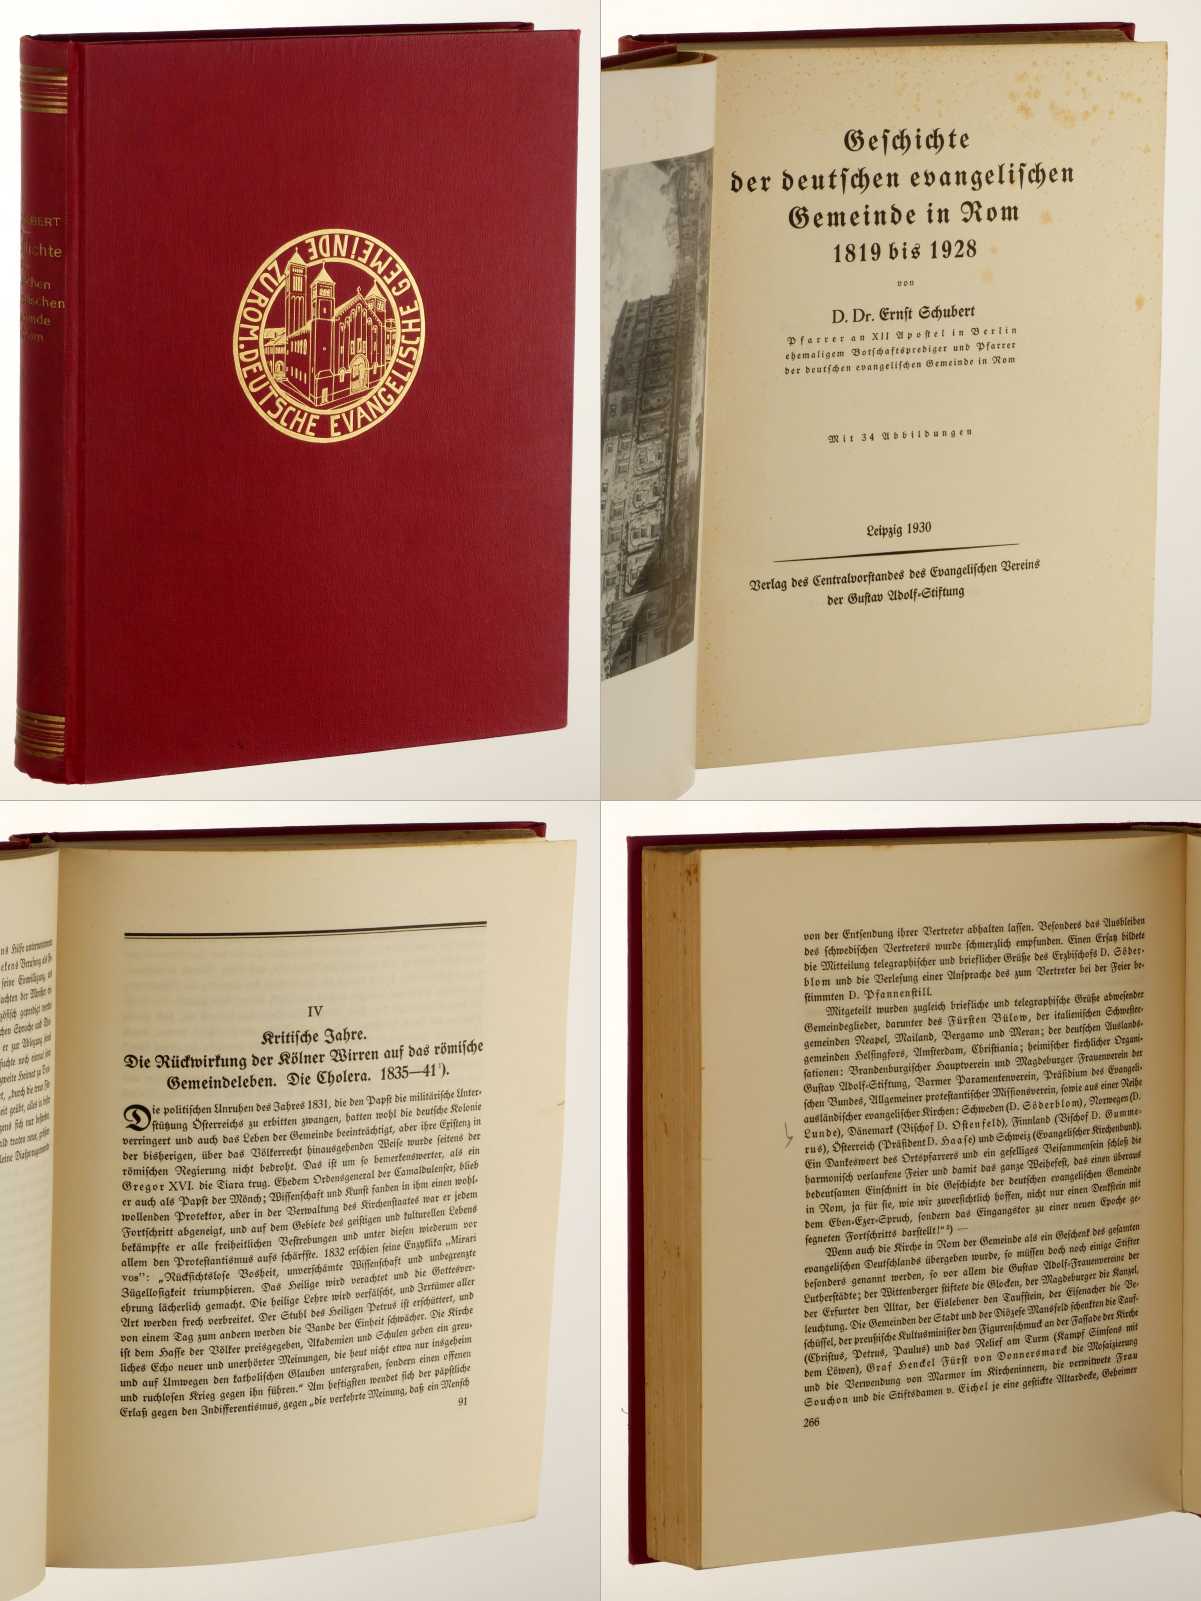 Schubert, Ernst:  Geschichte der deutschen evangelischen Gemeinde in Rom 1819 bis 1928. 